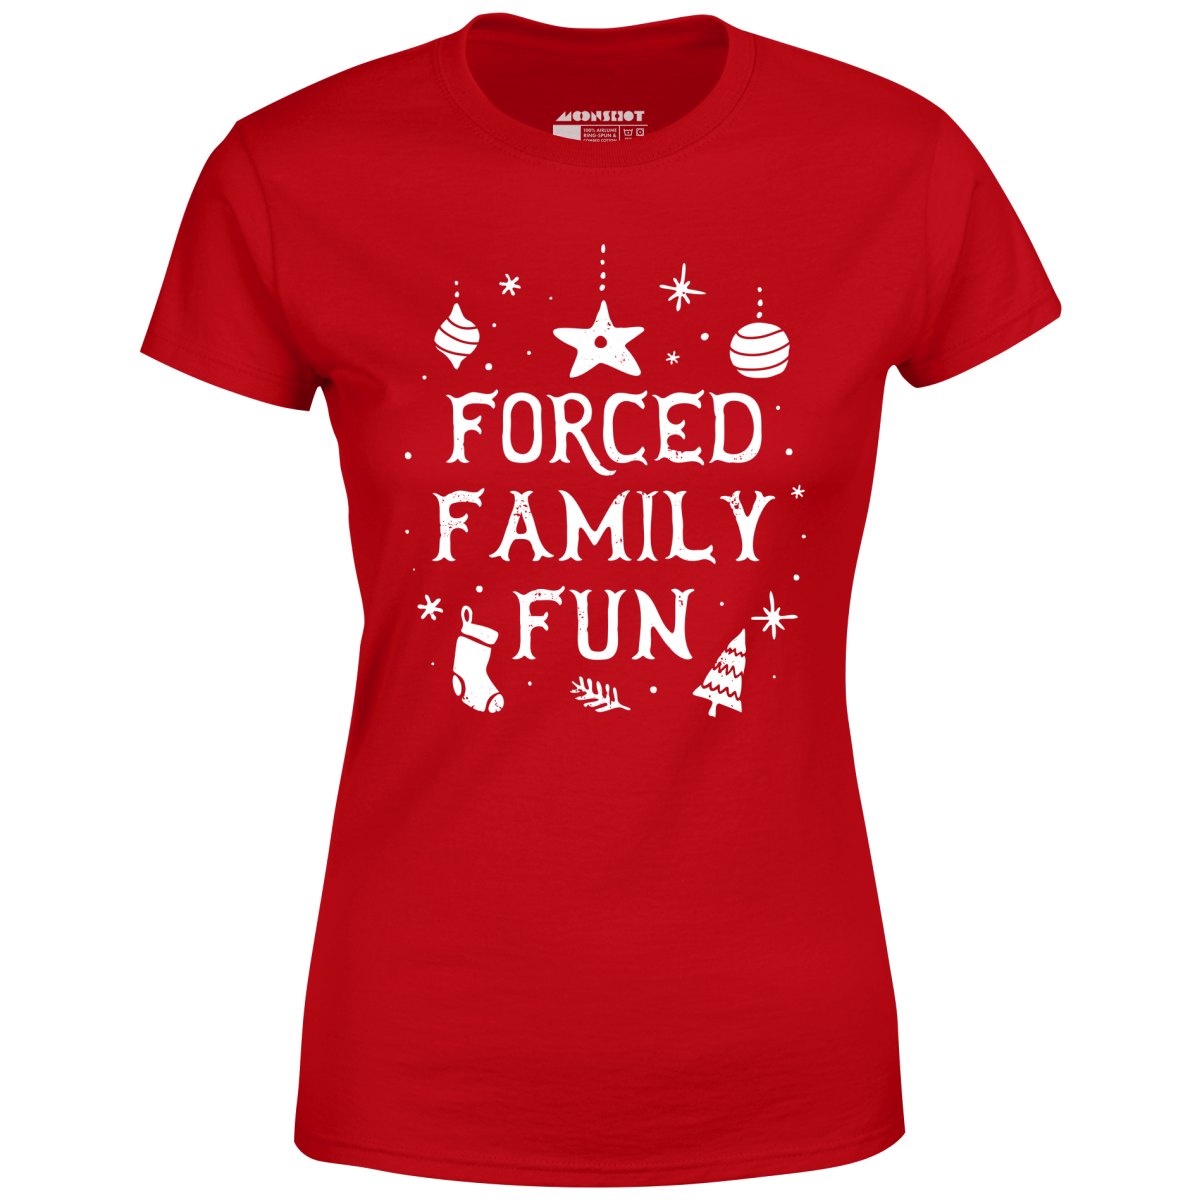 Forced Family Fun - Women's T-Shirt